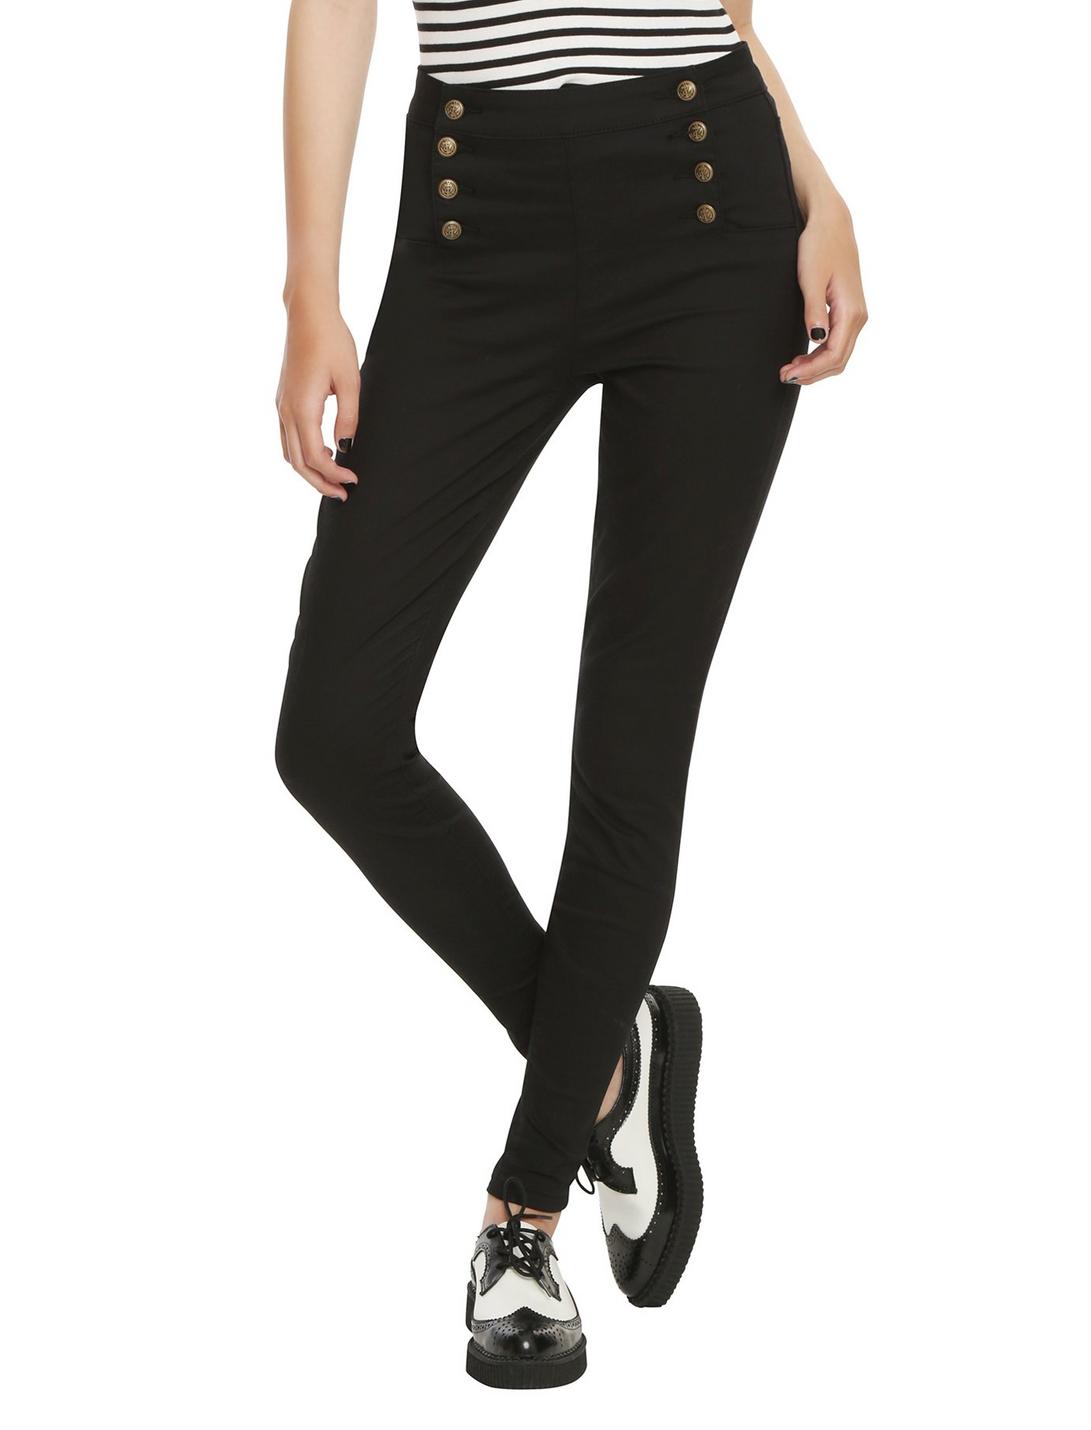 LOVEsick Black Sailor High-Waisted Skinny Jeans, BLACK, hi-res